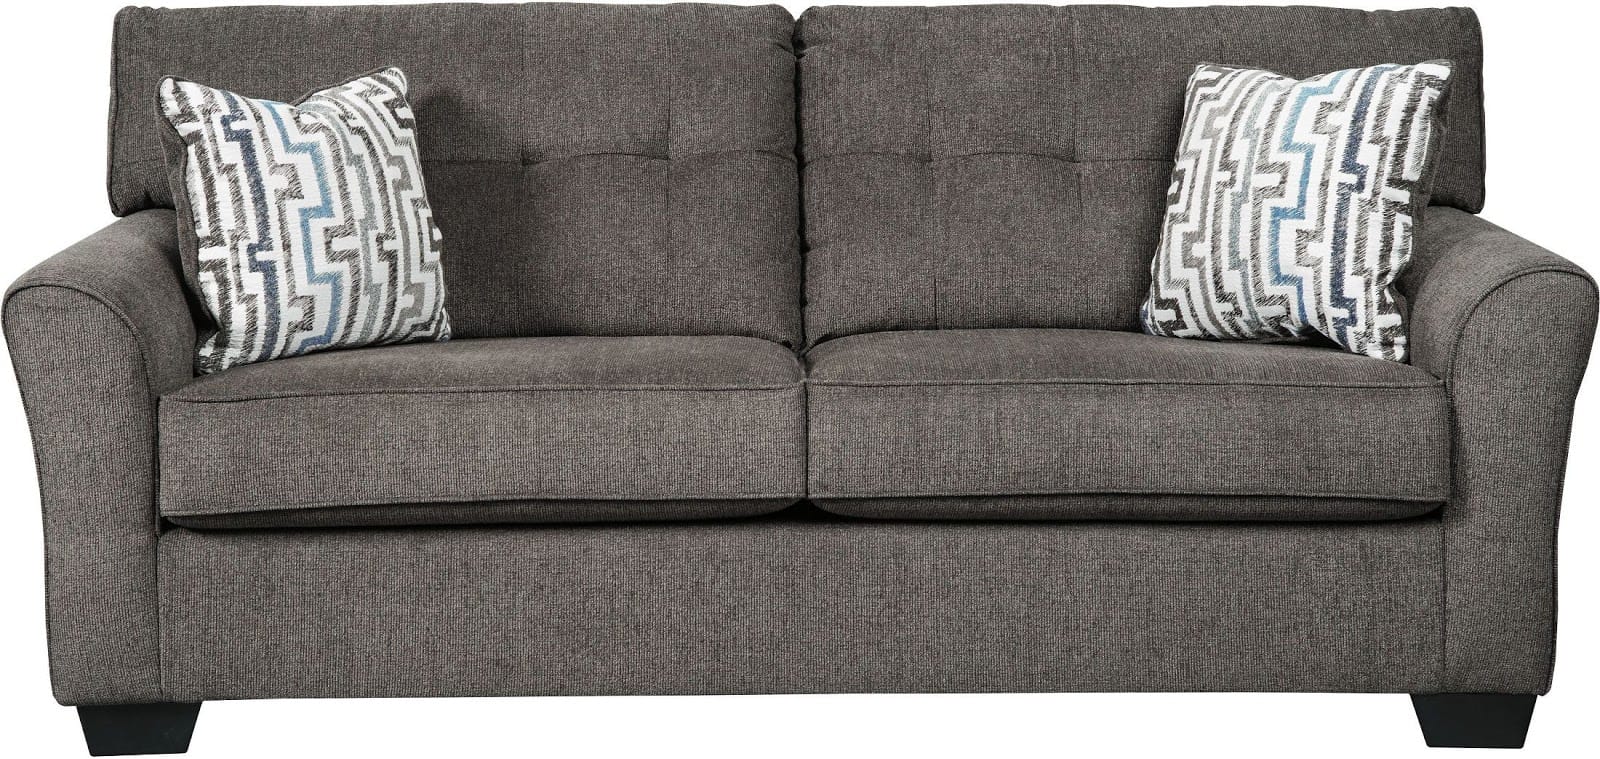 Alsen Granite Sofa Signature Design By Ashley Furniture